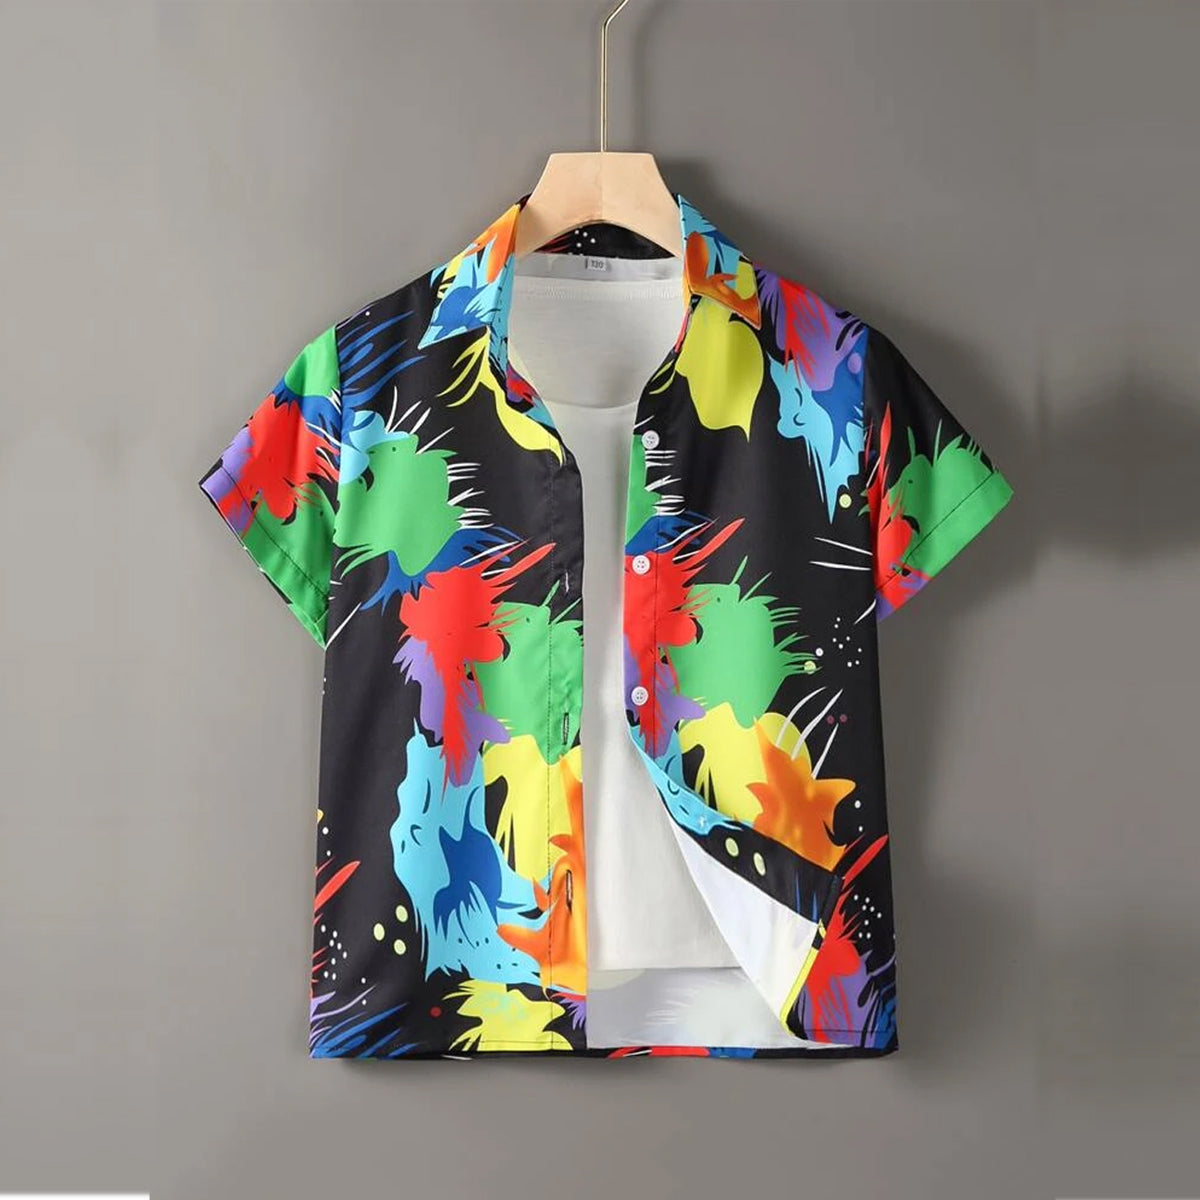 Venutaloza Multicolour Heart's & Graphic Colorblock Designer Button Front Shirt For Boy.